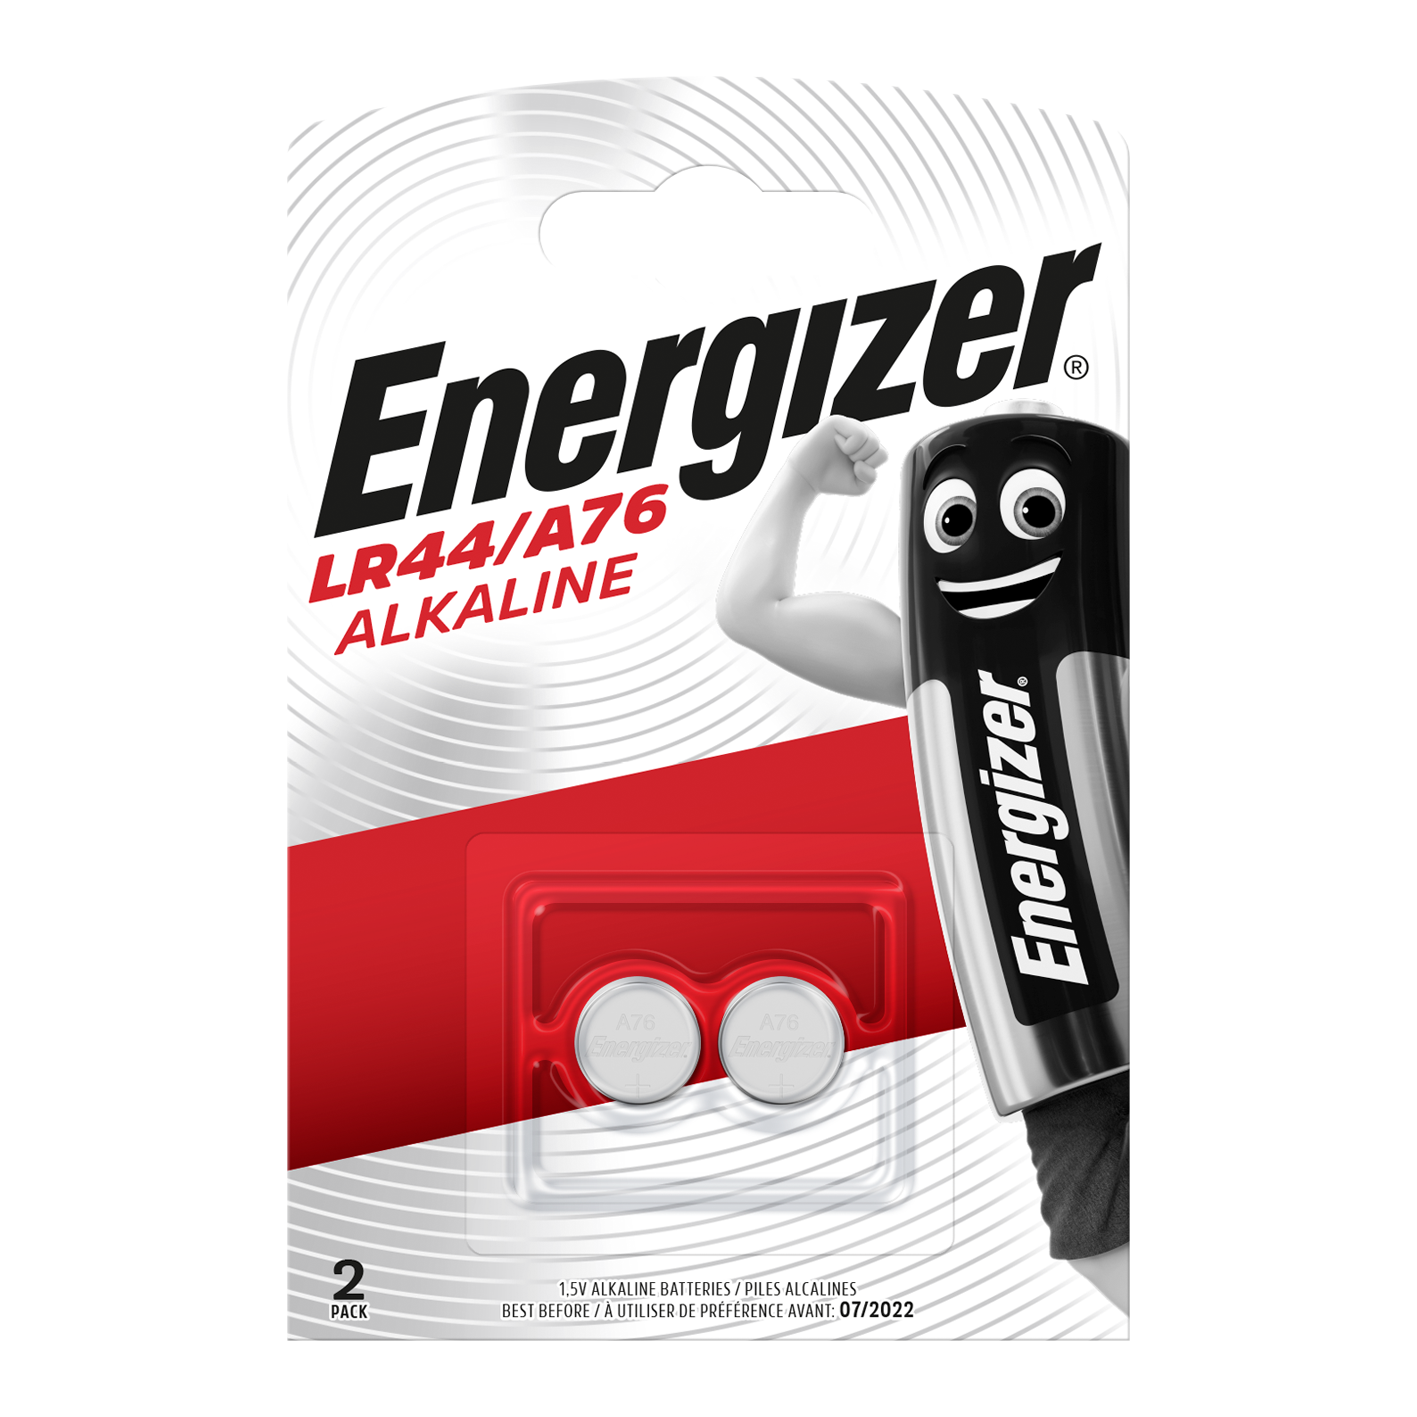 Energizer LR44/A76 pila alcalina tipo botón, paquete de 2